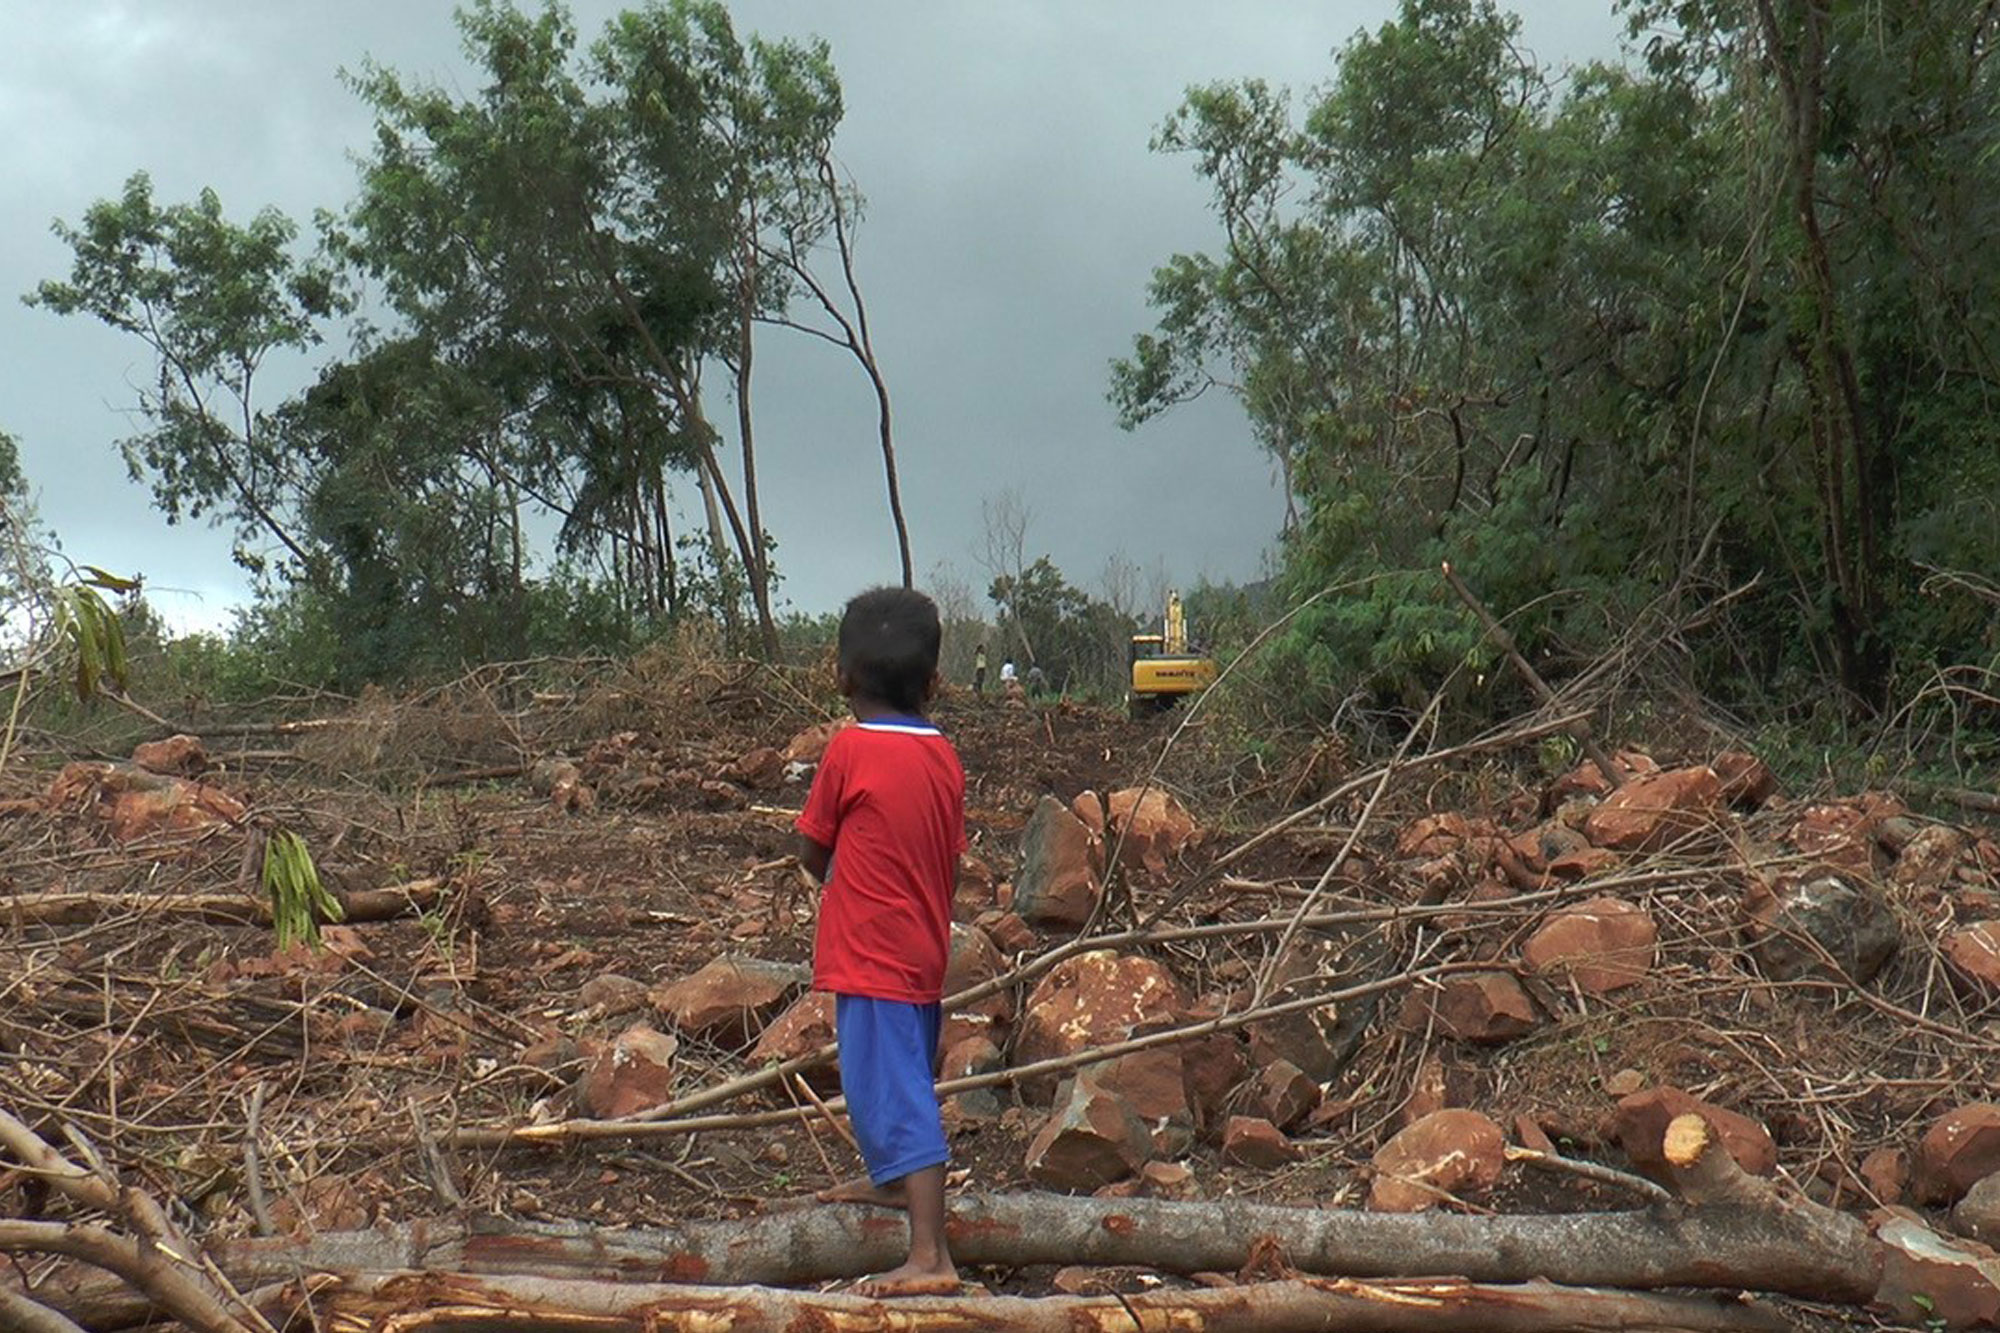 Still from film - boy standing in devastated landscape